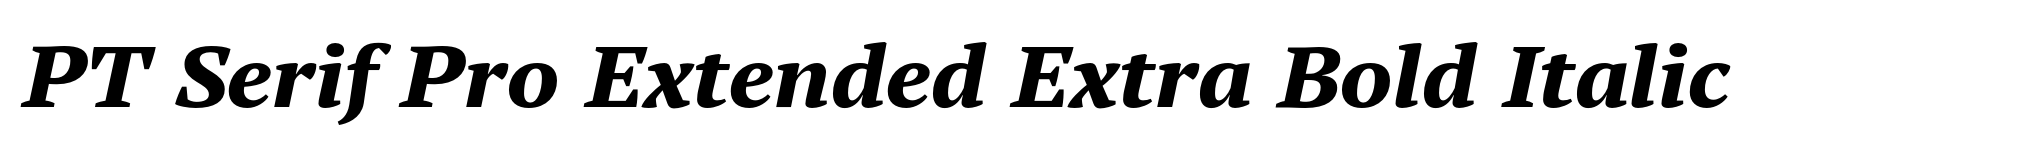 PT Serif Pro Extended Extra Bold Italic image